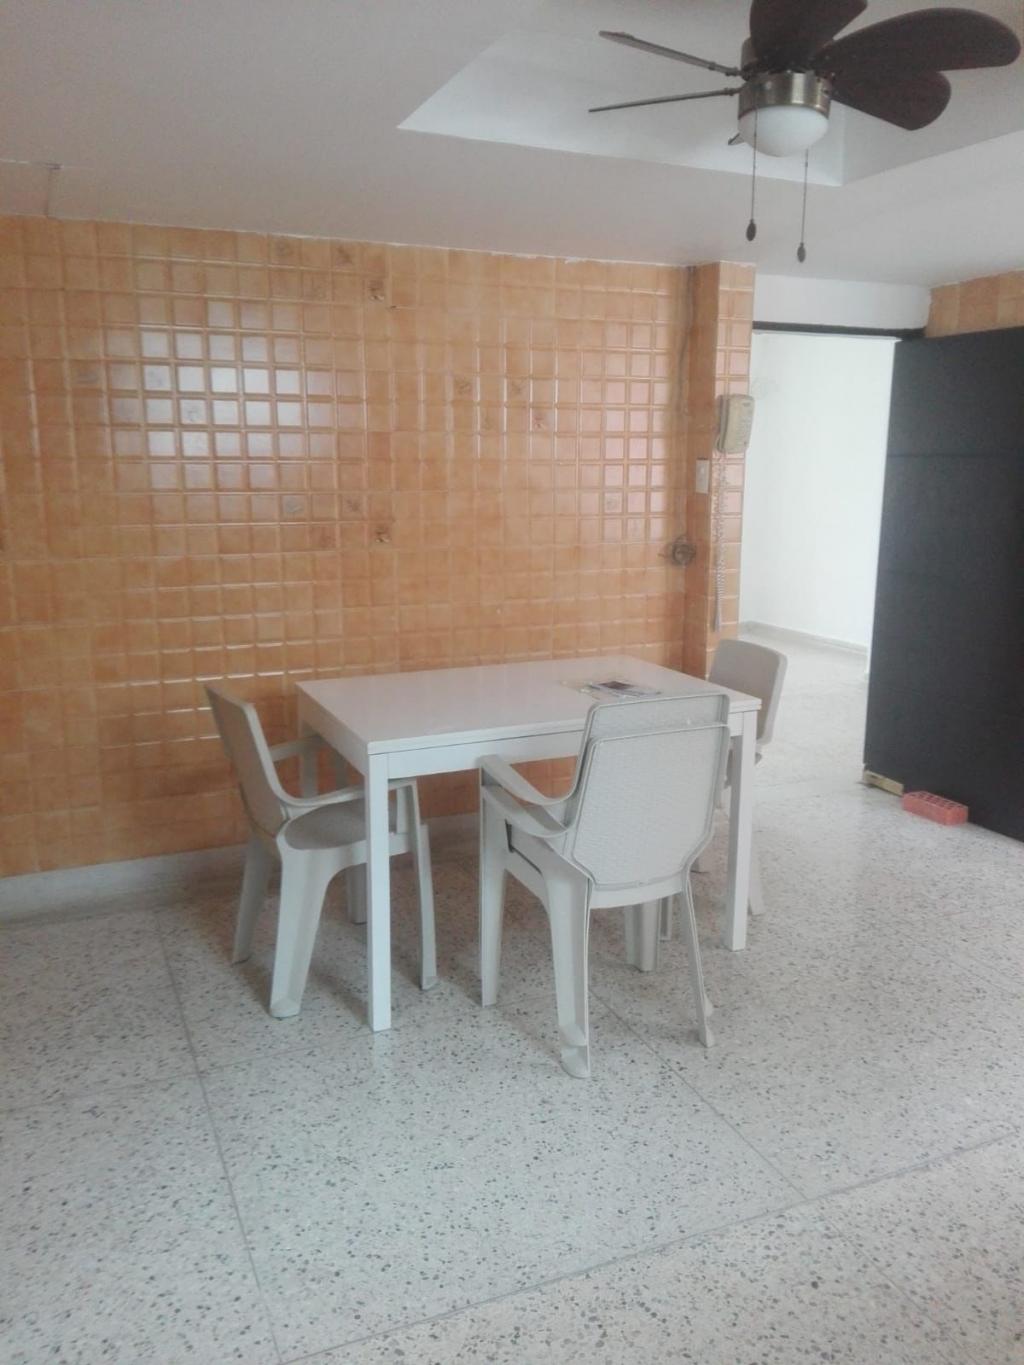 Apartamento en Venta por Financar S.A. ubicado en Barranquilla. El código del inmueble es: 7390057 Imágen 12